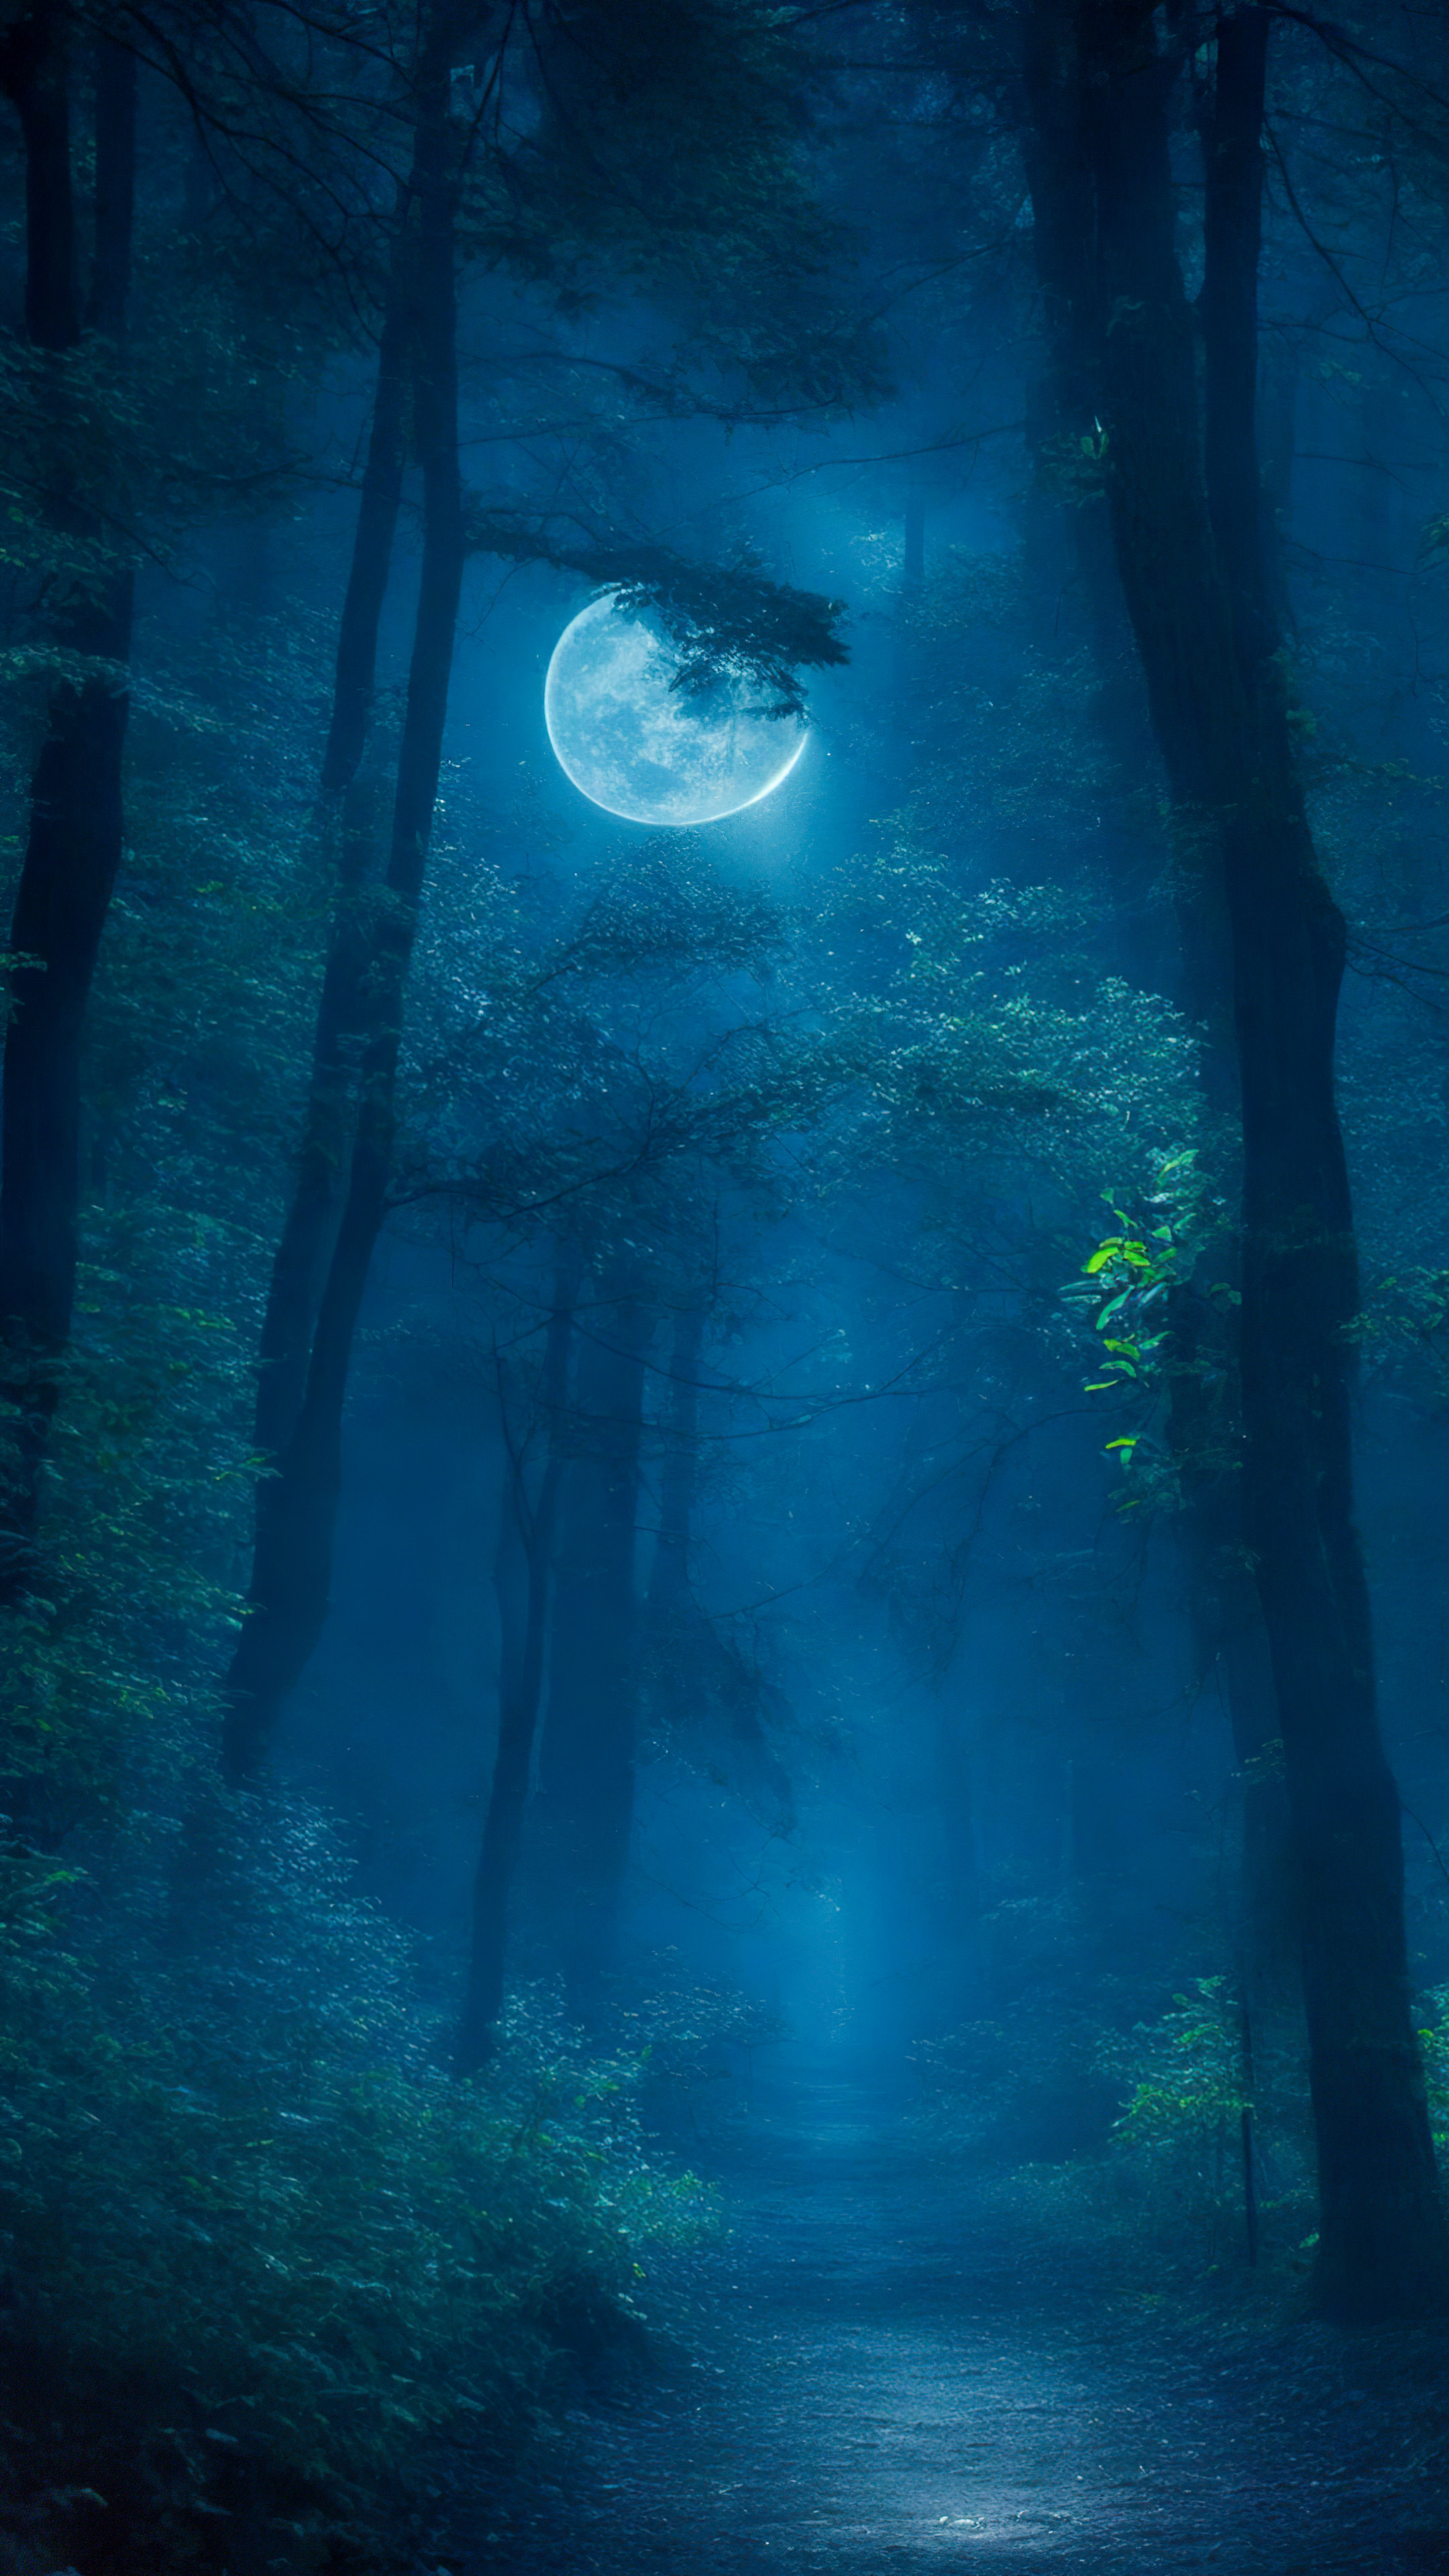 Plongez dans le mystère avec notre meilleur fond d'écran de paysage, illustrant une forêt énigmatique la nuit, où la lumière de la lune se faufile à travers les arbres, créant une atmosphère captivante et mystérieuse.